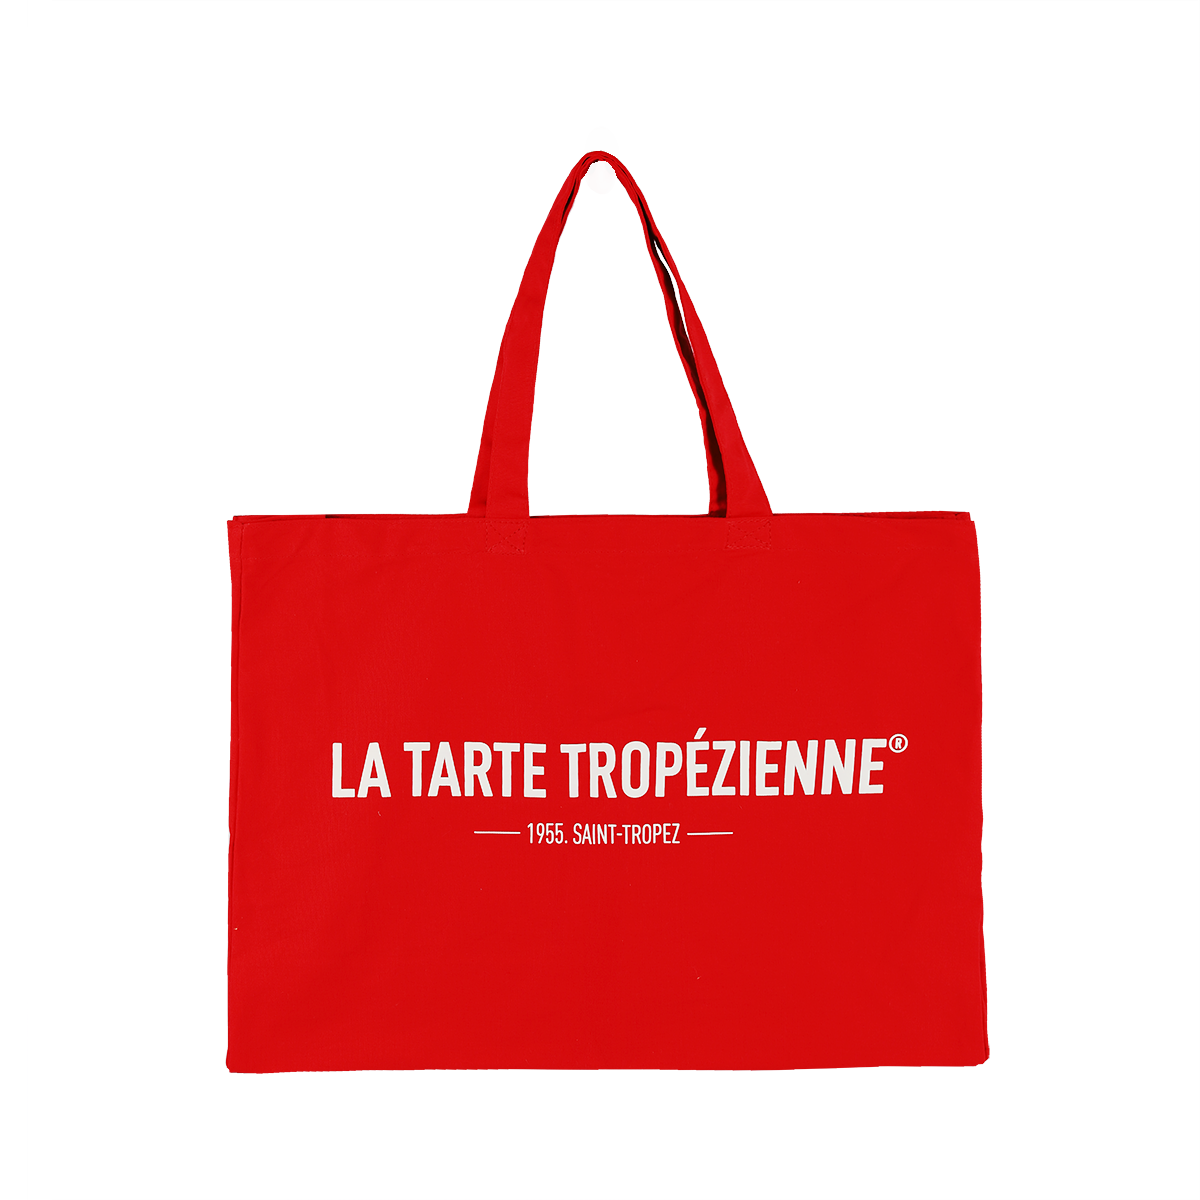 Tarte Champagne Sparkle Makeup Bag